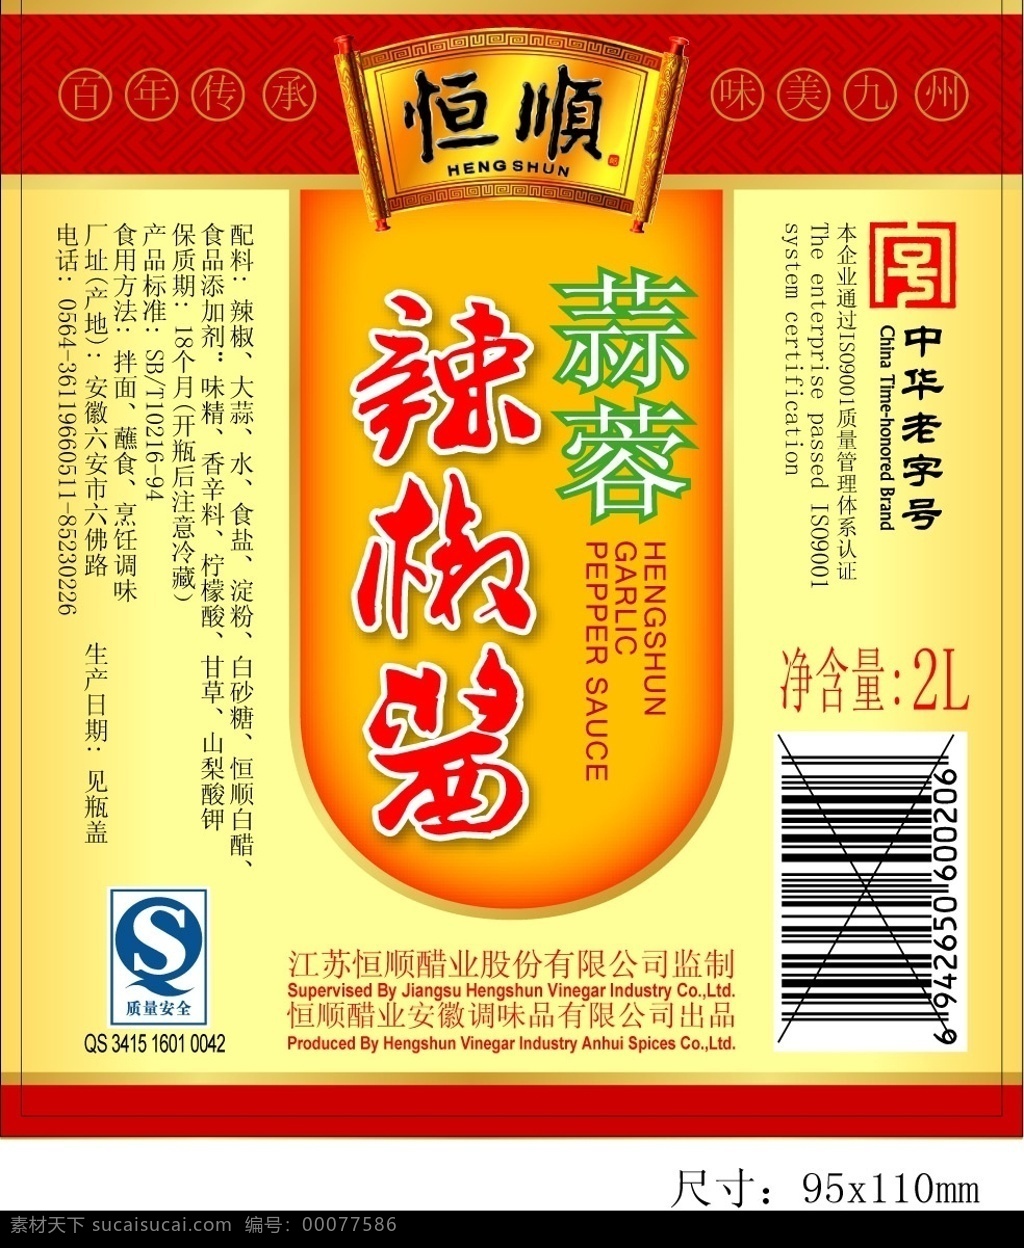 辣椒酱 酱商标 包装设计 矢量图库